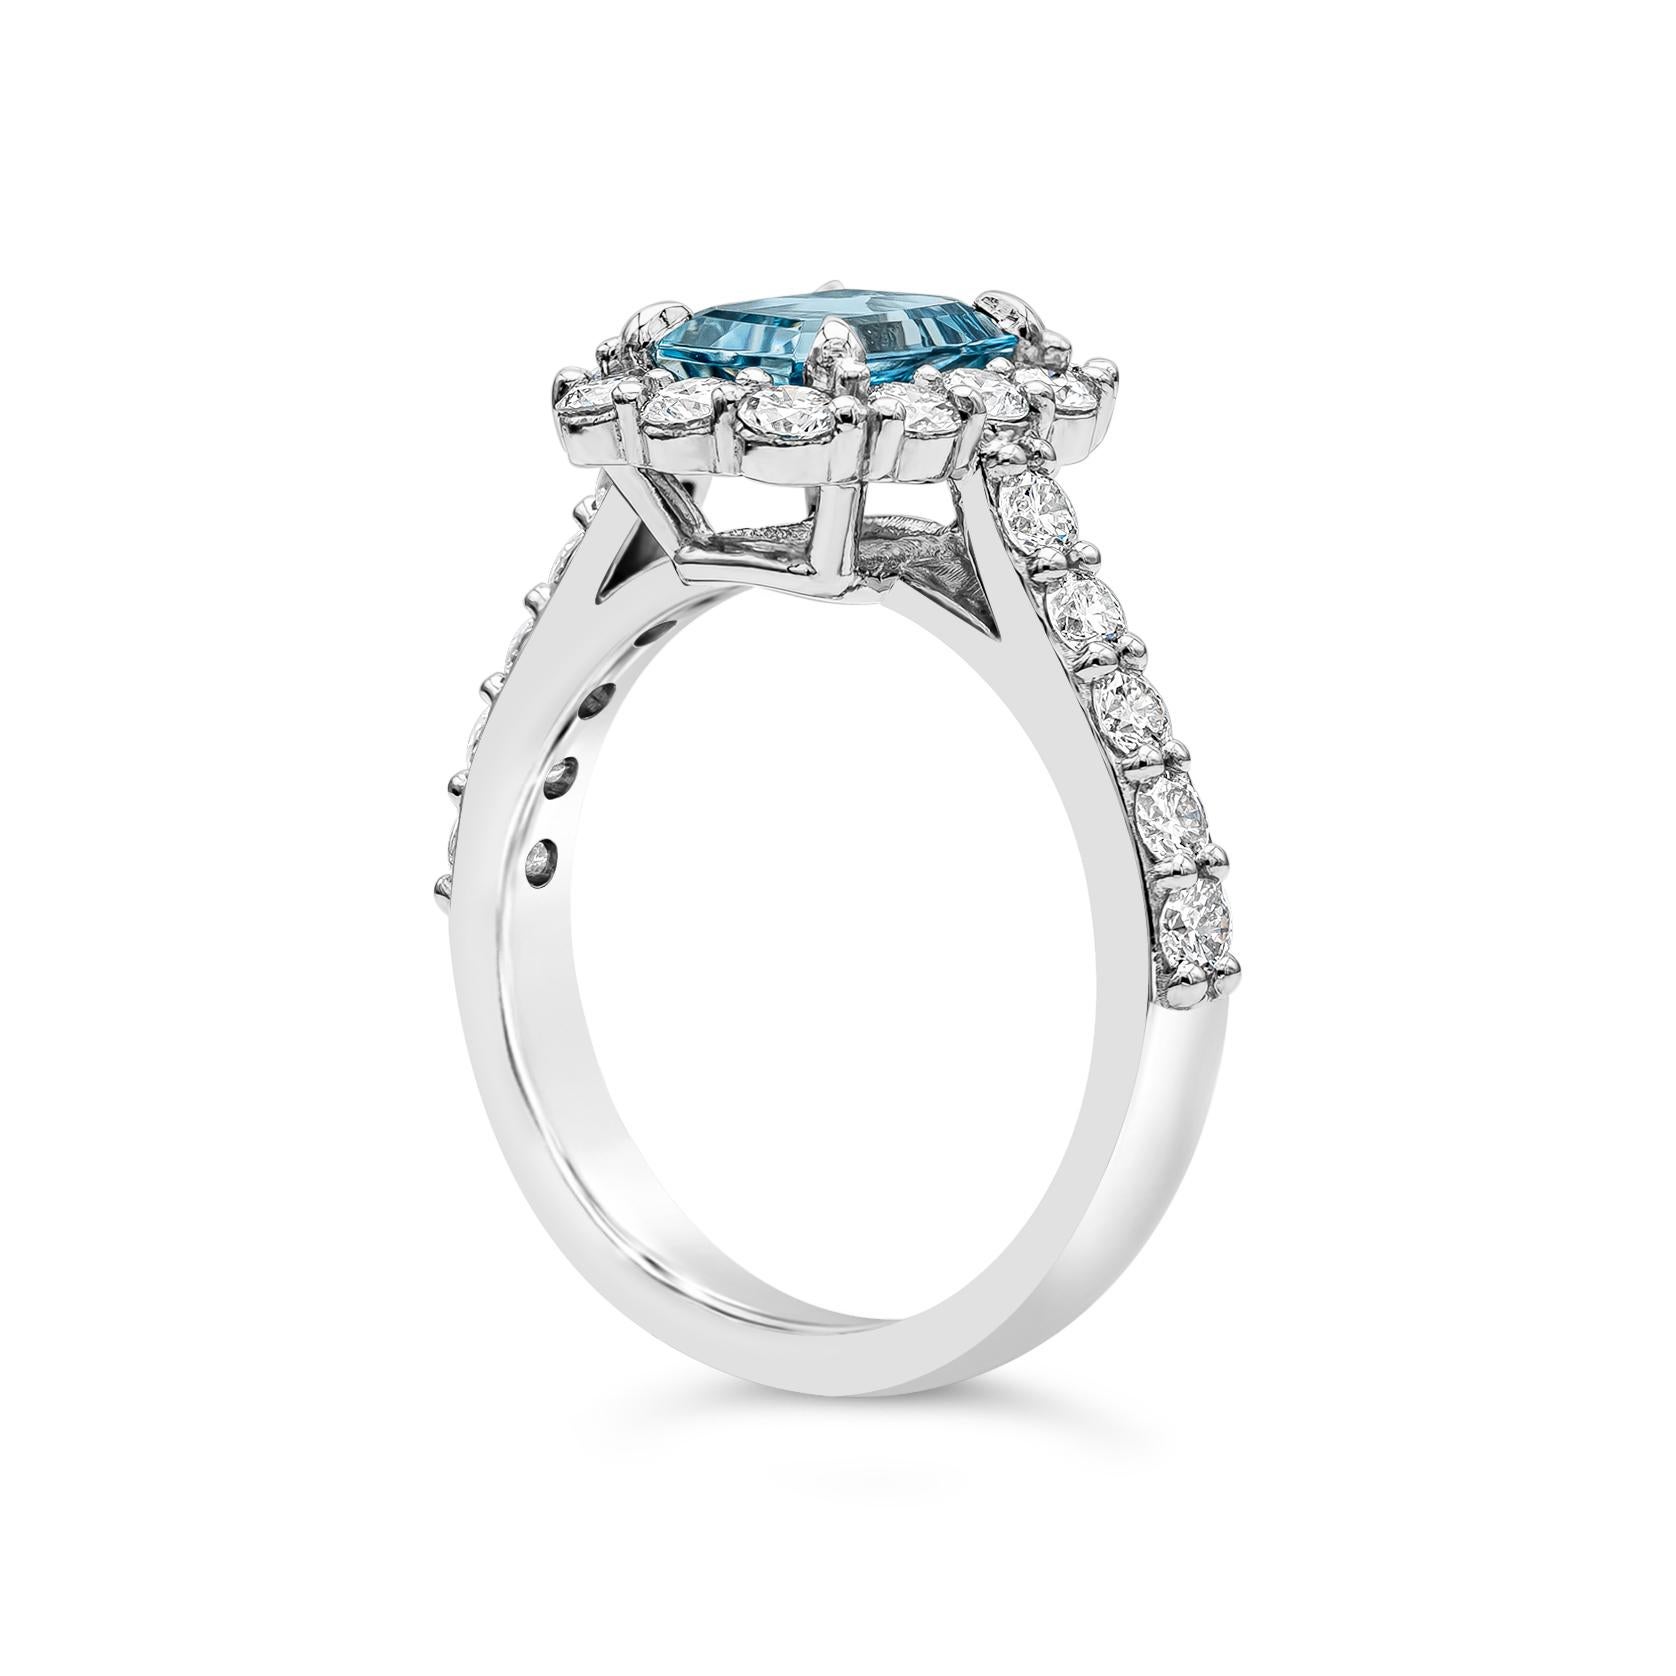 Contemporary 1.39 Carat Aquamarine and Diamond Halo Engagement Ring in Platinum